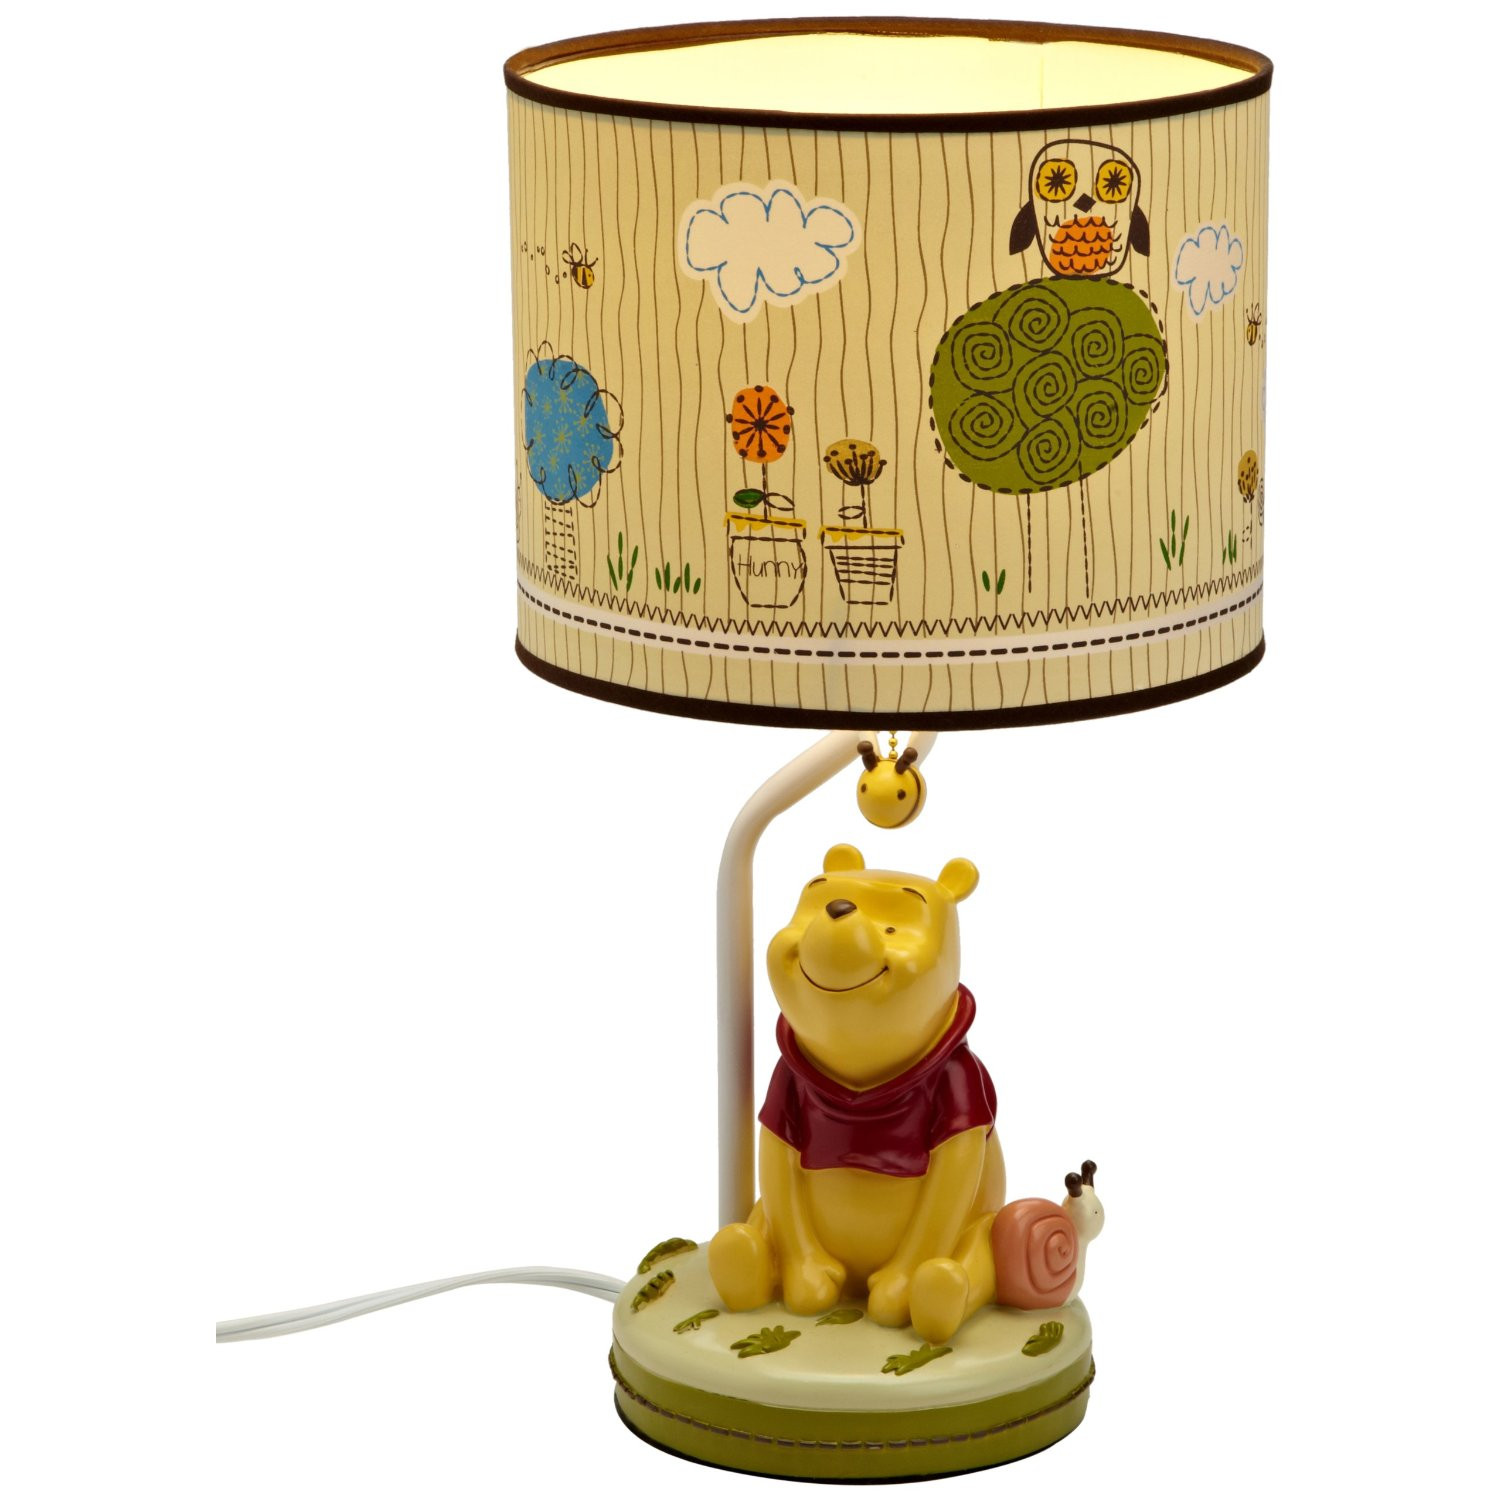 Desk Lamps For Kids Rooms
 Desk lamps for kids rooms